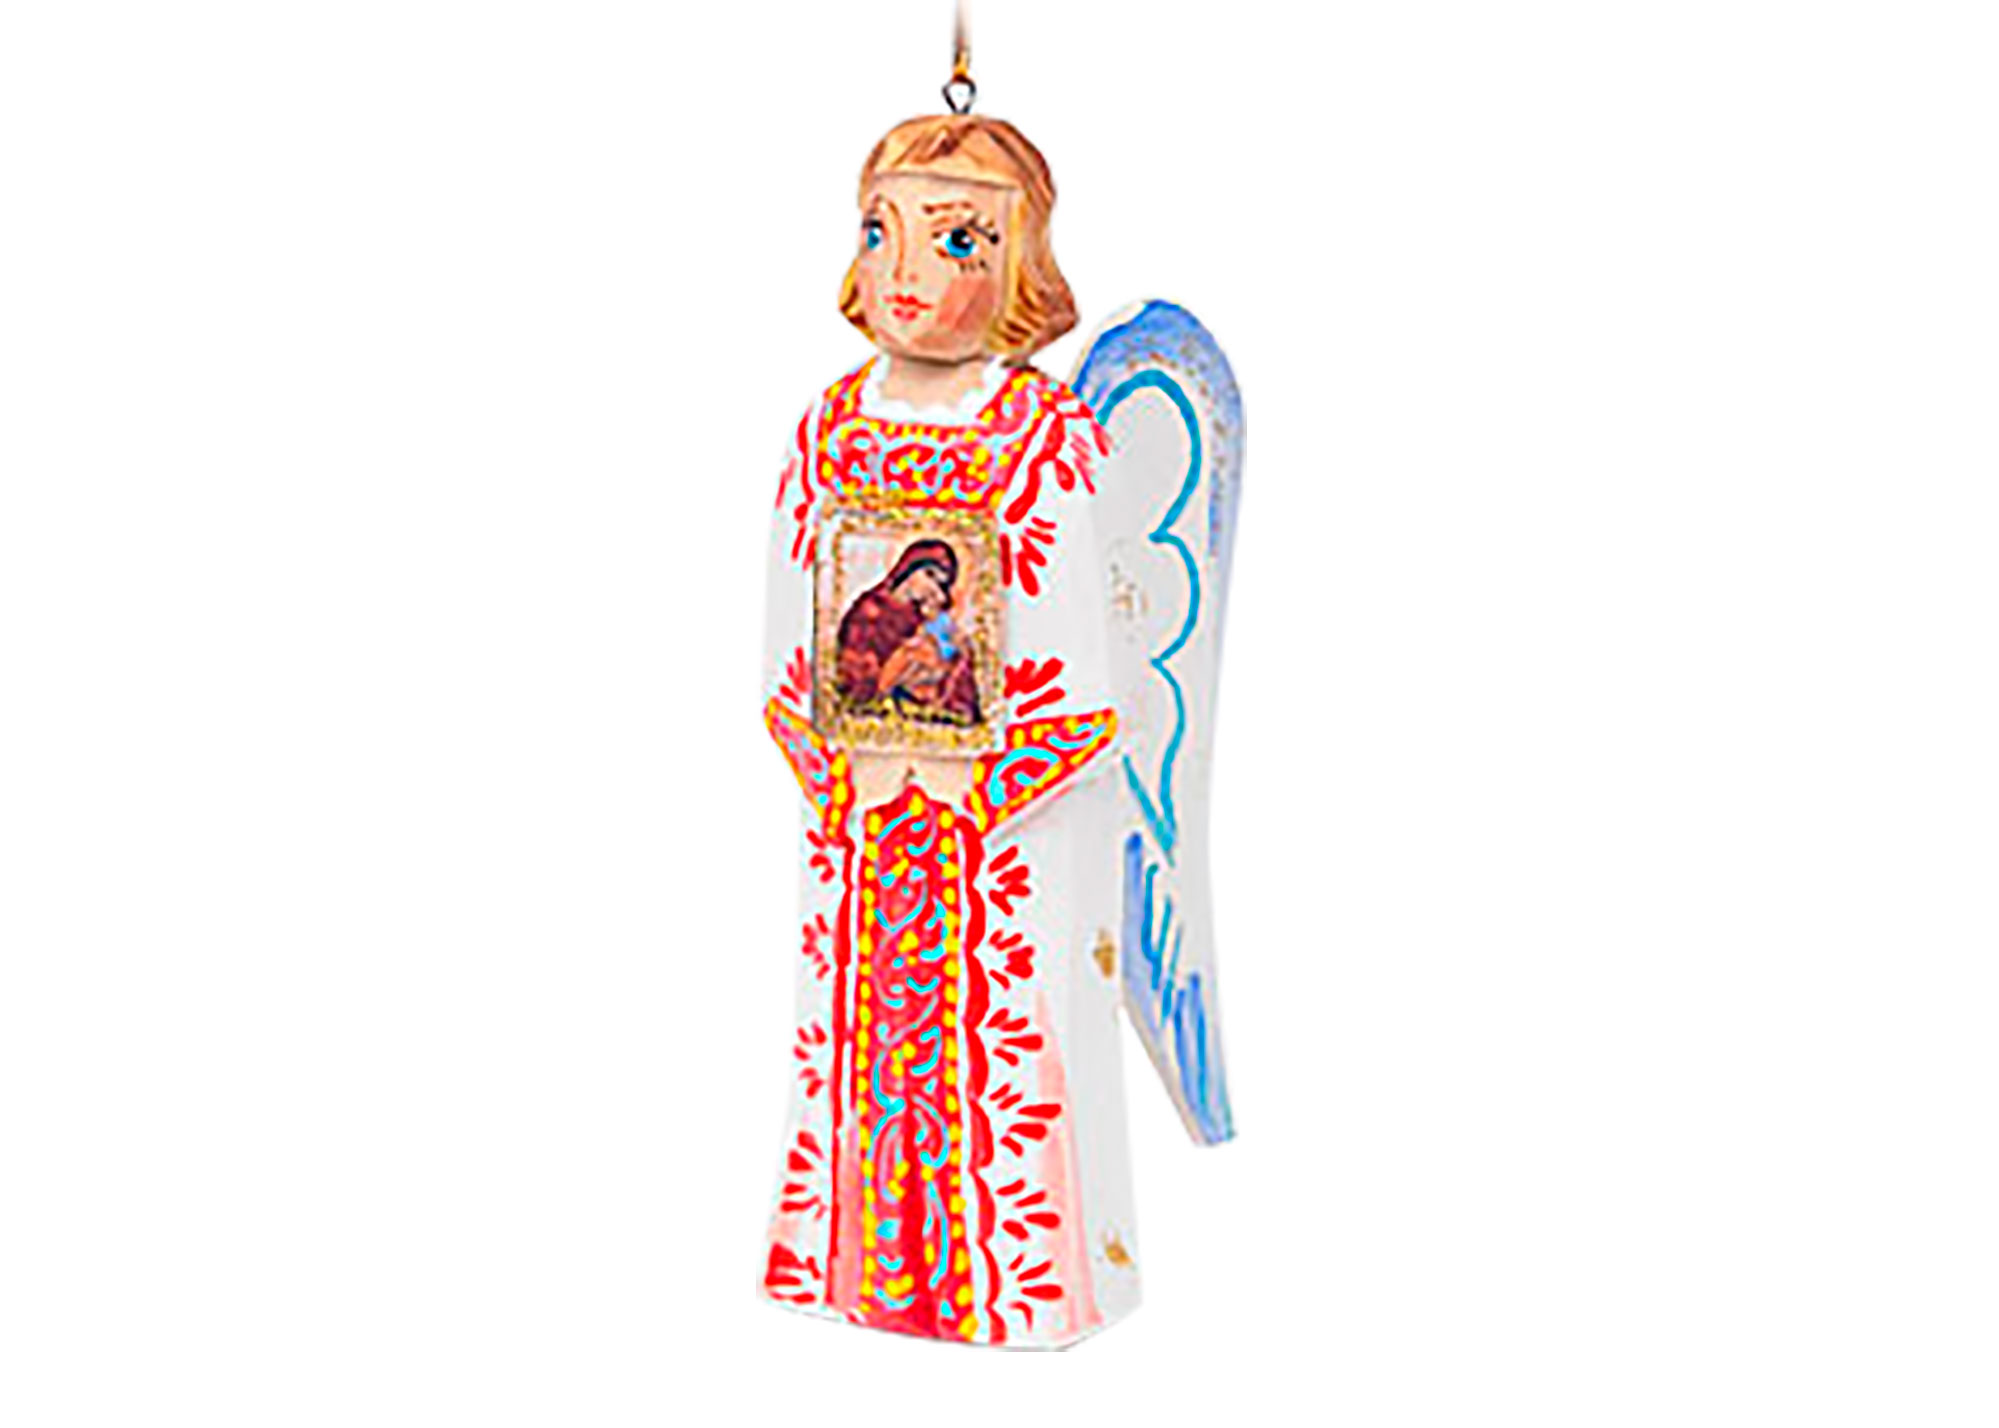 Buy Carved "Guardian Angel" Ornament, 4.5" at GoldenCockerel.com